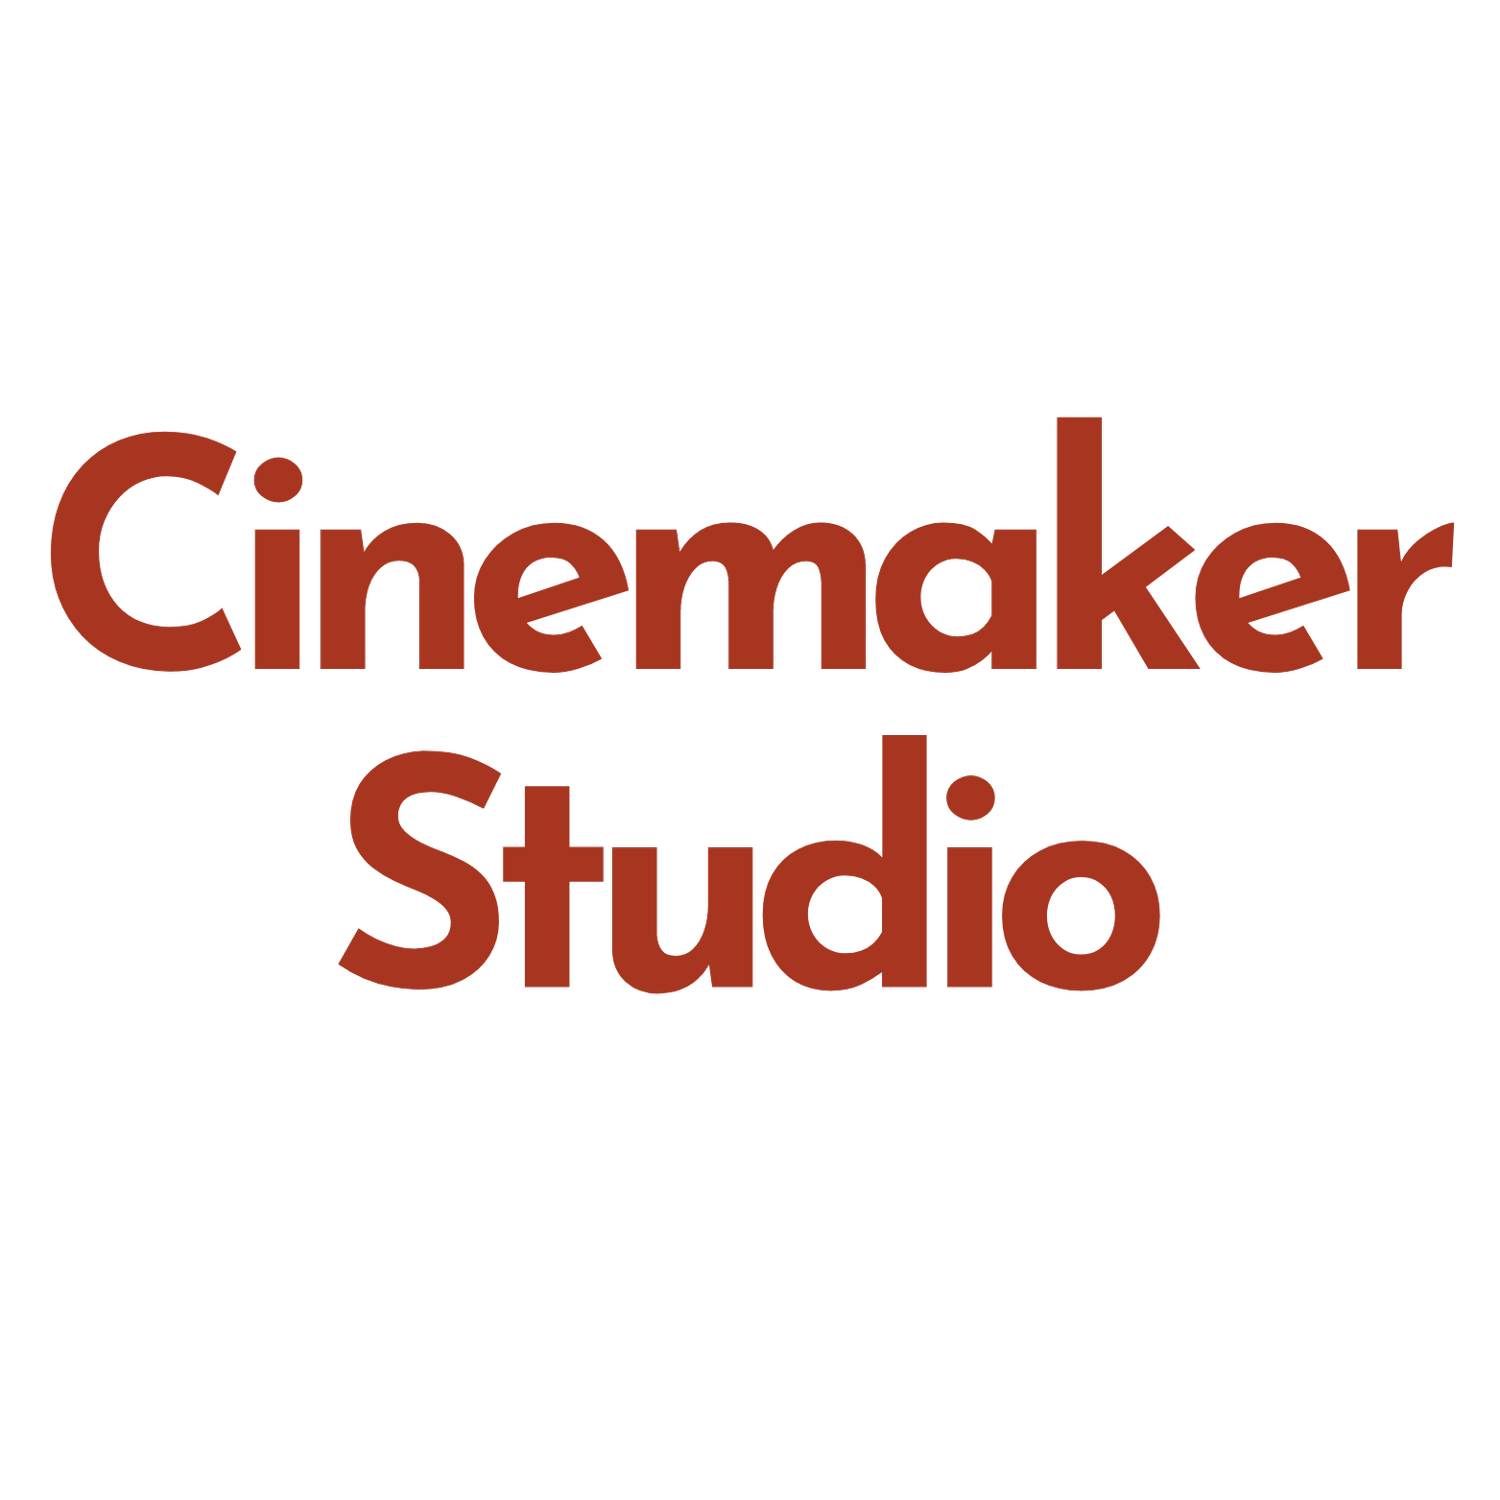 Cinemaker Studios